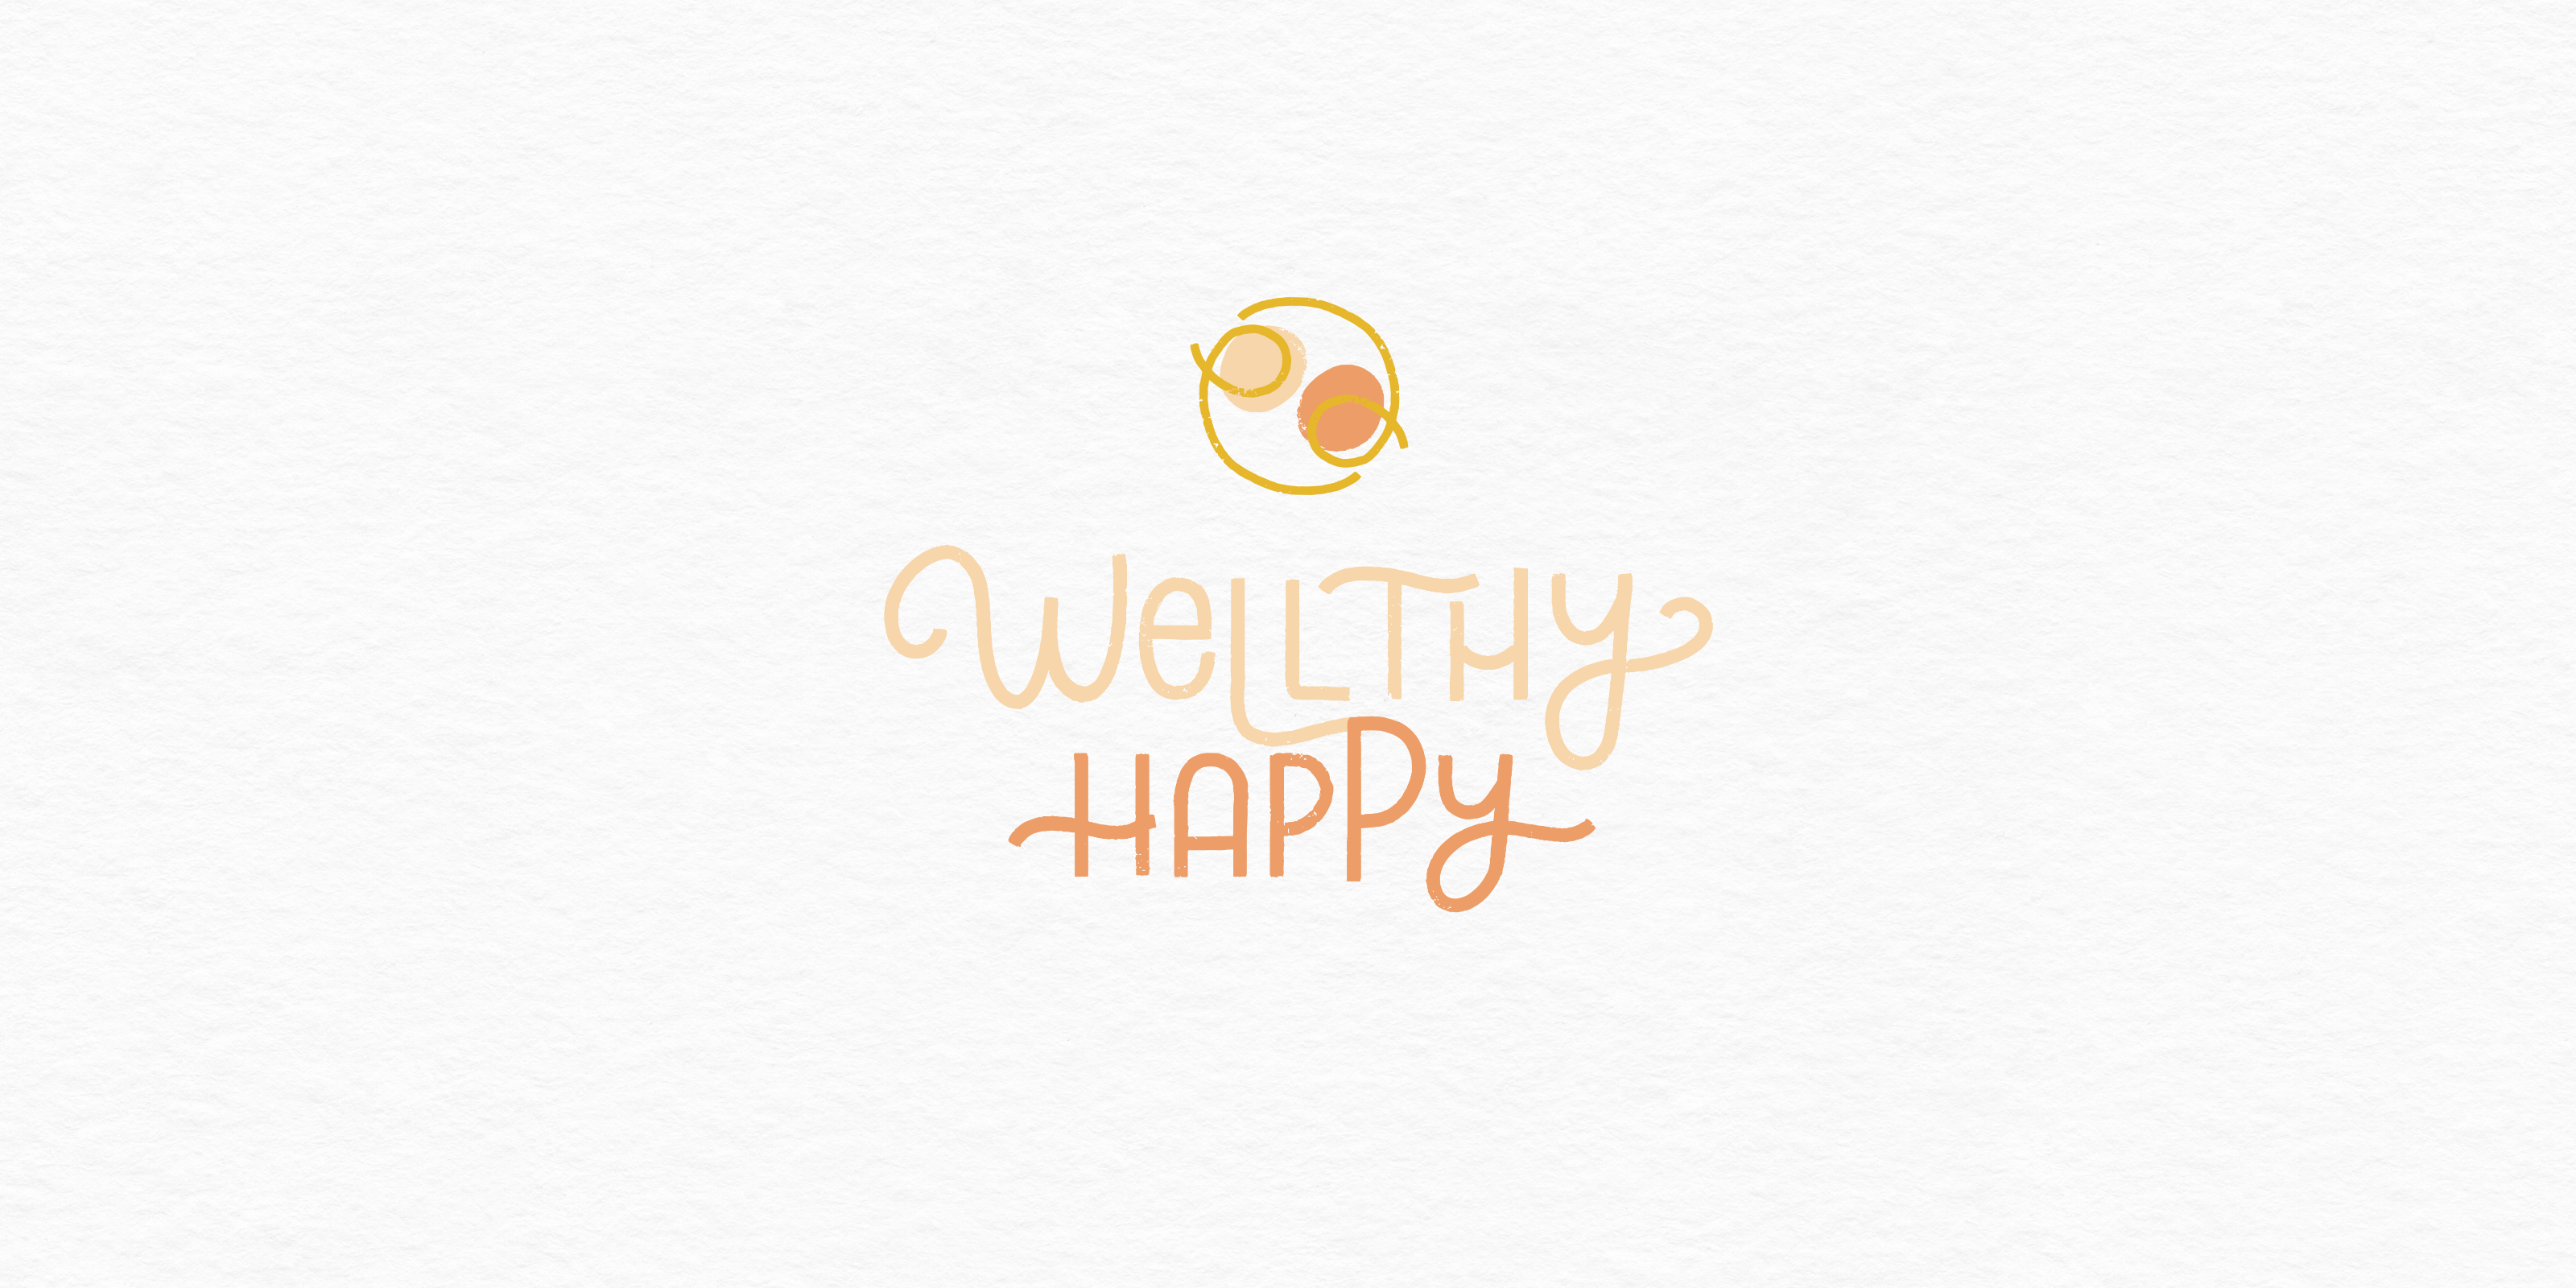 Wellthy happy - playful logo design